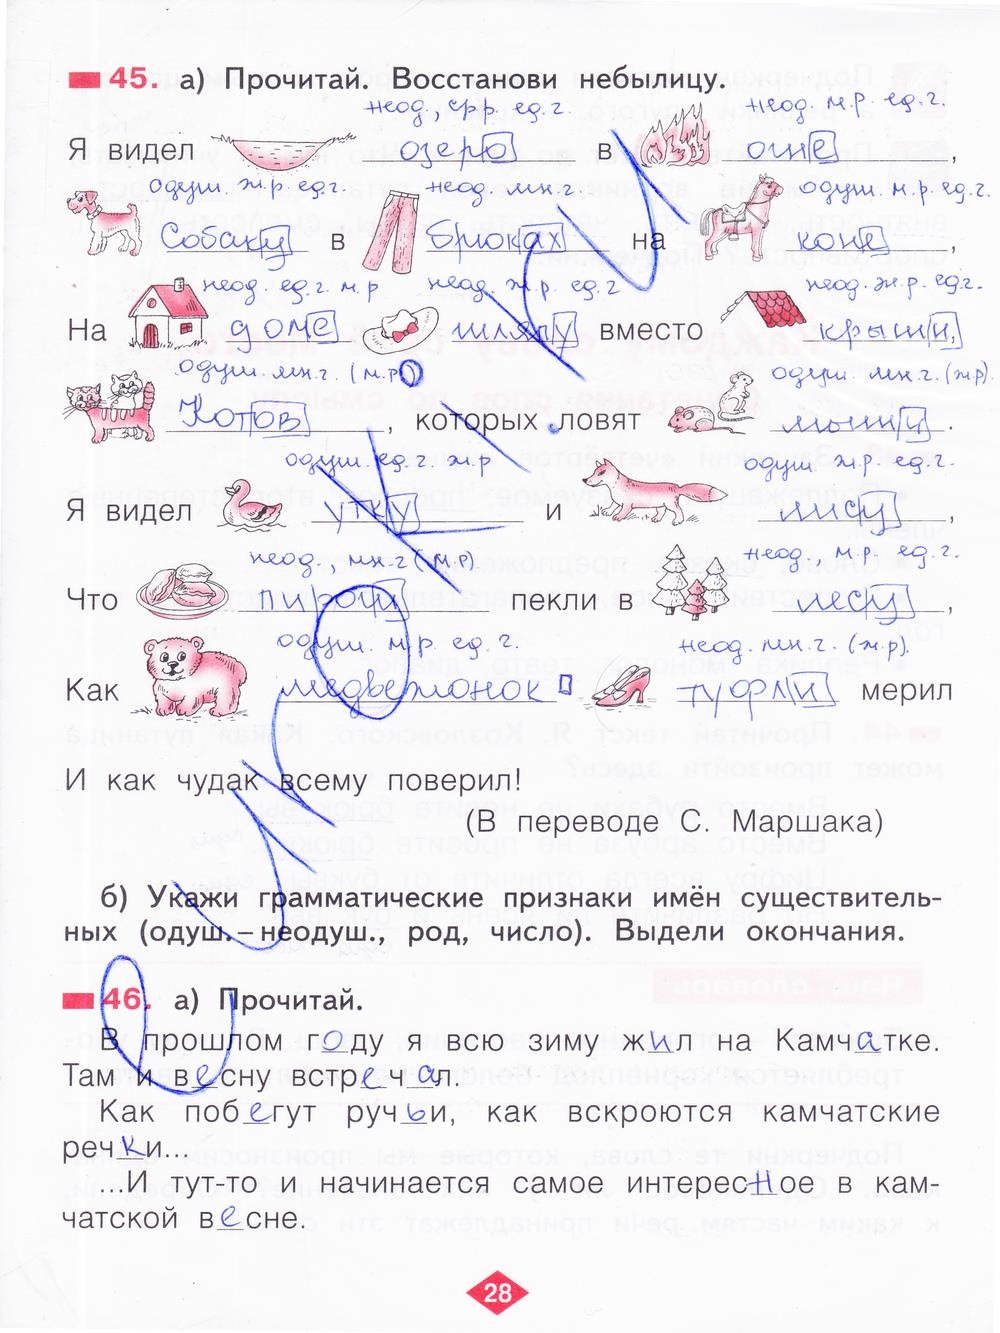 гдз 2 класс рабочая тетрадь часть 3 страница 28 русский язык Яковлева